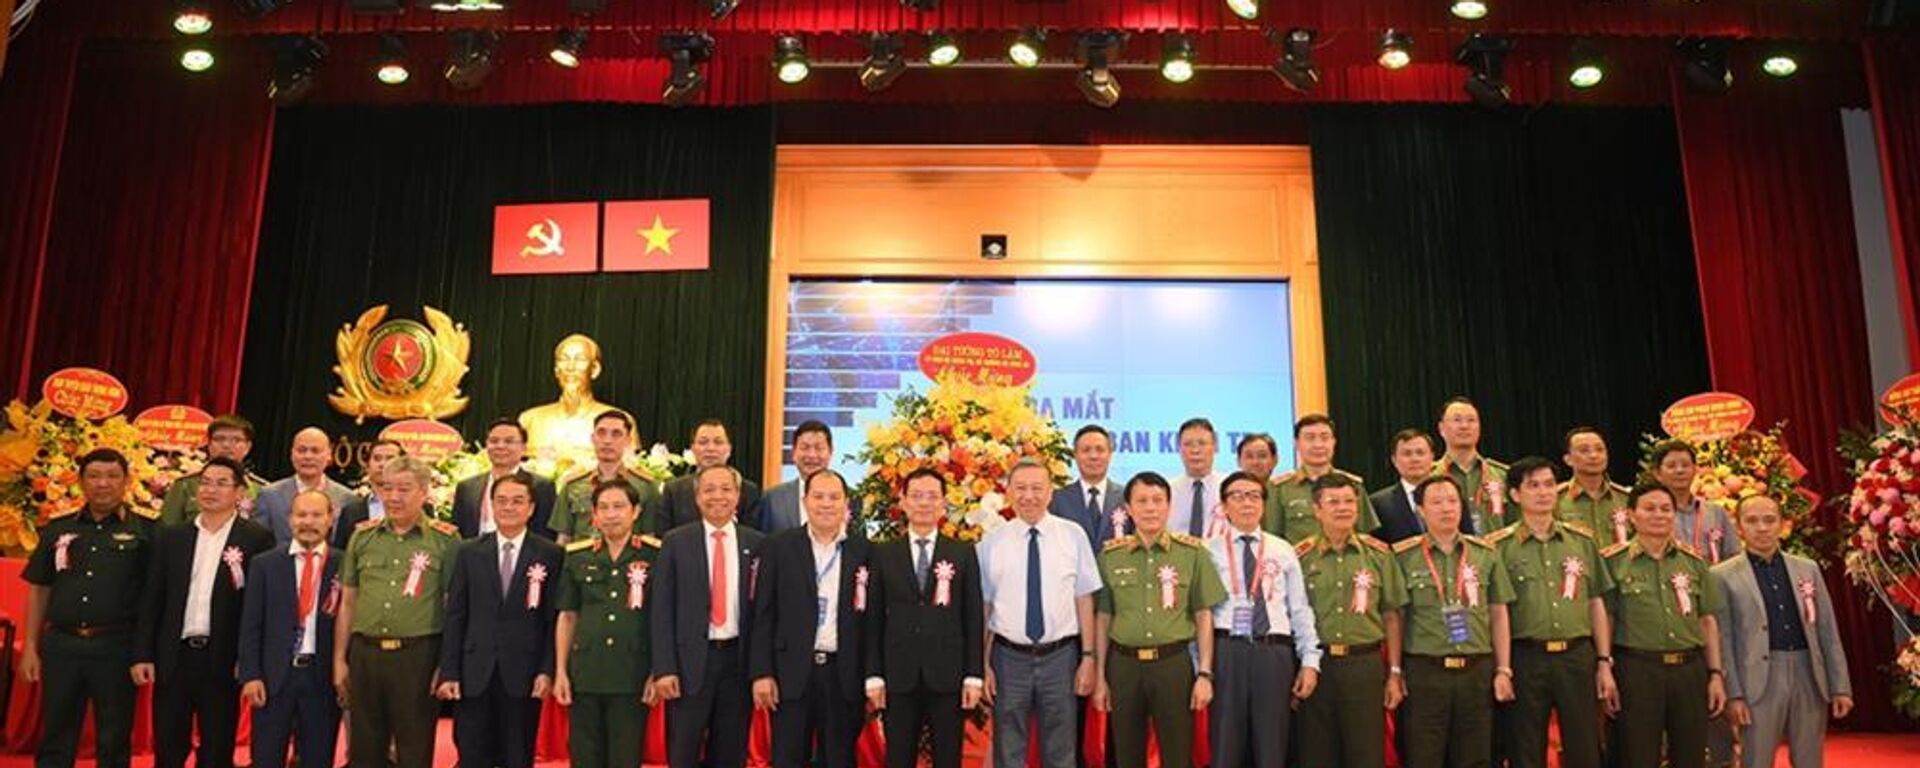 Bộ trưởng Tô Lâm cùng các đại biểu chúc mừng các đồng chí vừa được Đại hội bầu tham gia Ban Chấp hành Hiệp hội An ninh mạng quốc gia nhiệm kỳ I (2023 – 2028). - Sputnik Việt Nam, 1920, 09.09.2023